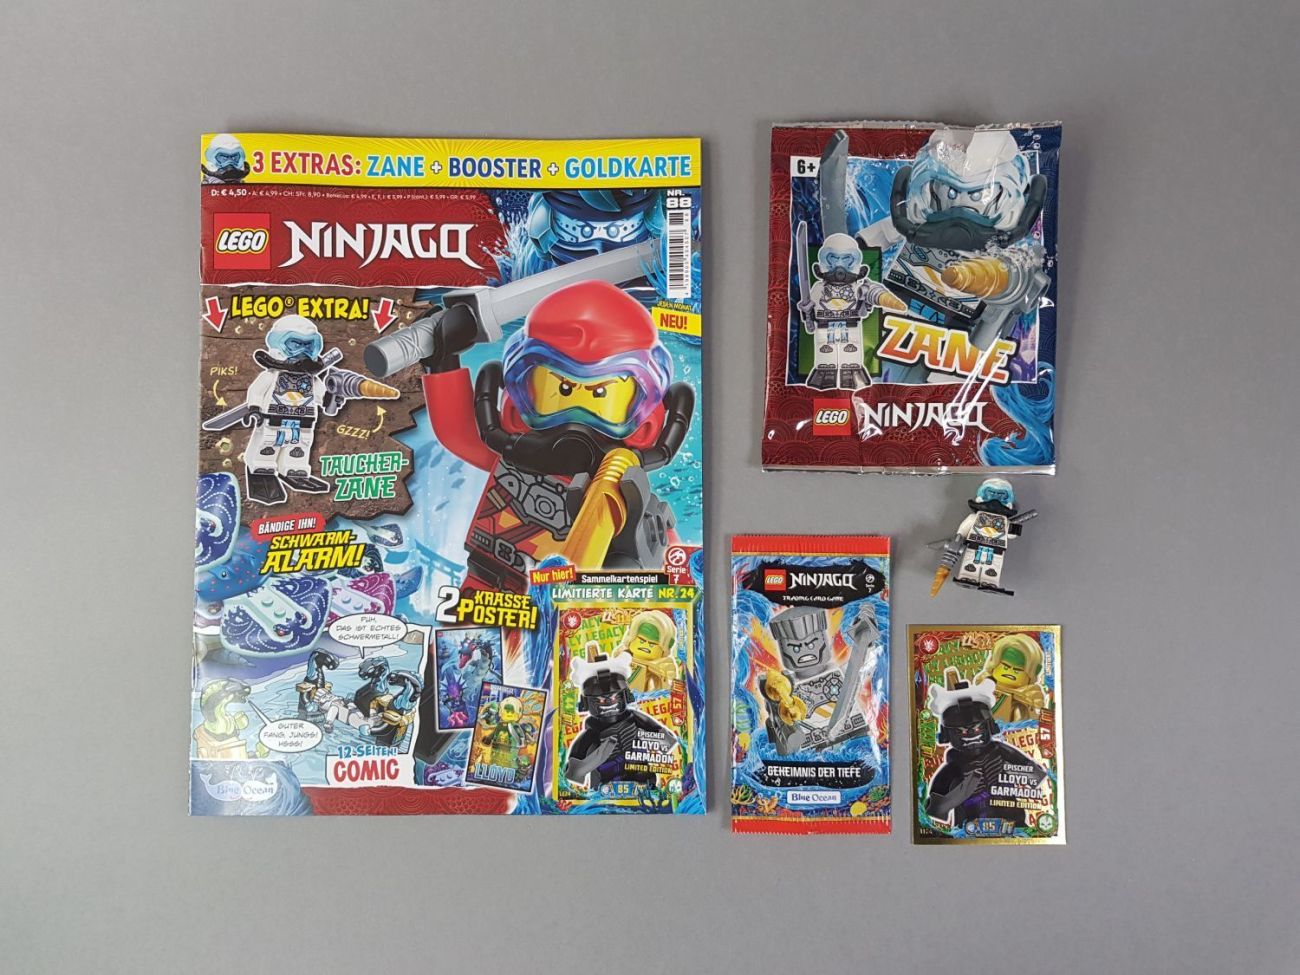 LEGO Ninjago Magazin #88: Zwischen Unkreativität und Wiederholungen - Review und Heftvorschau